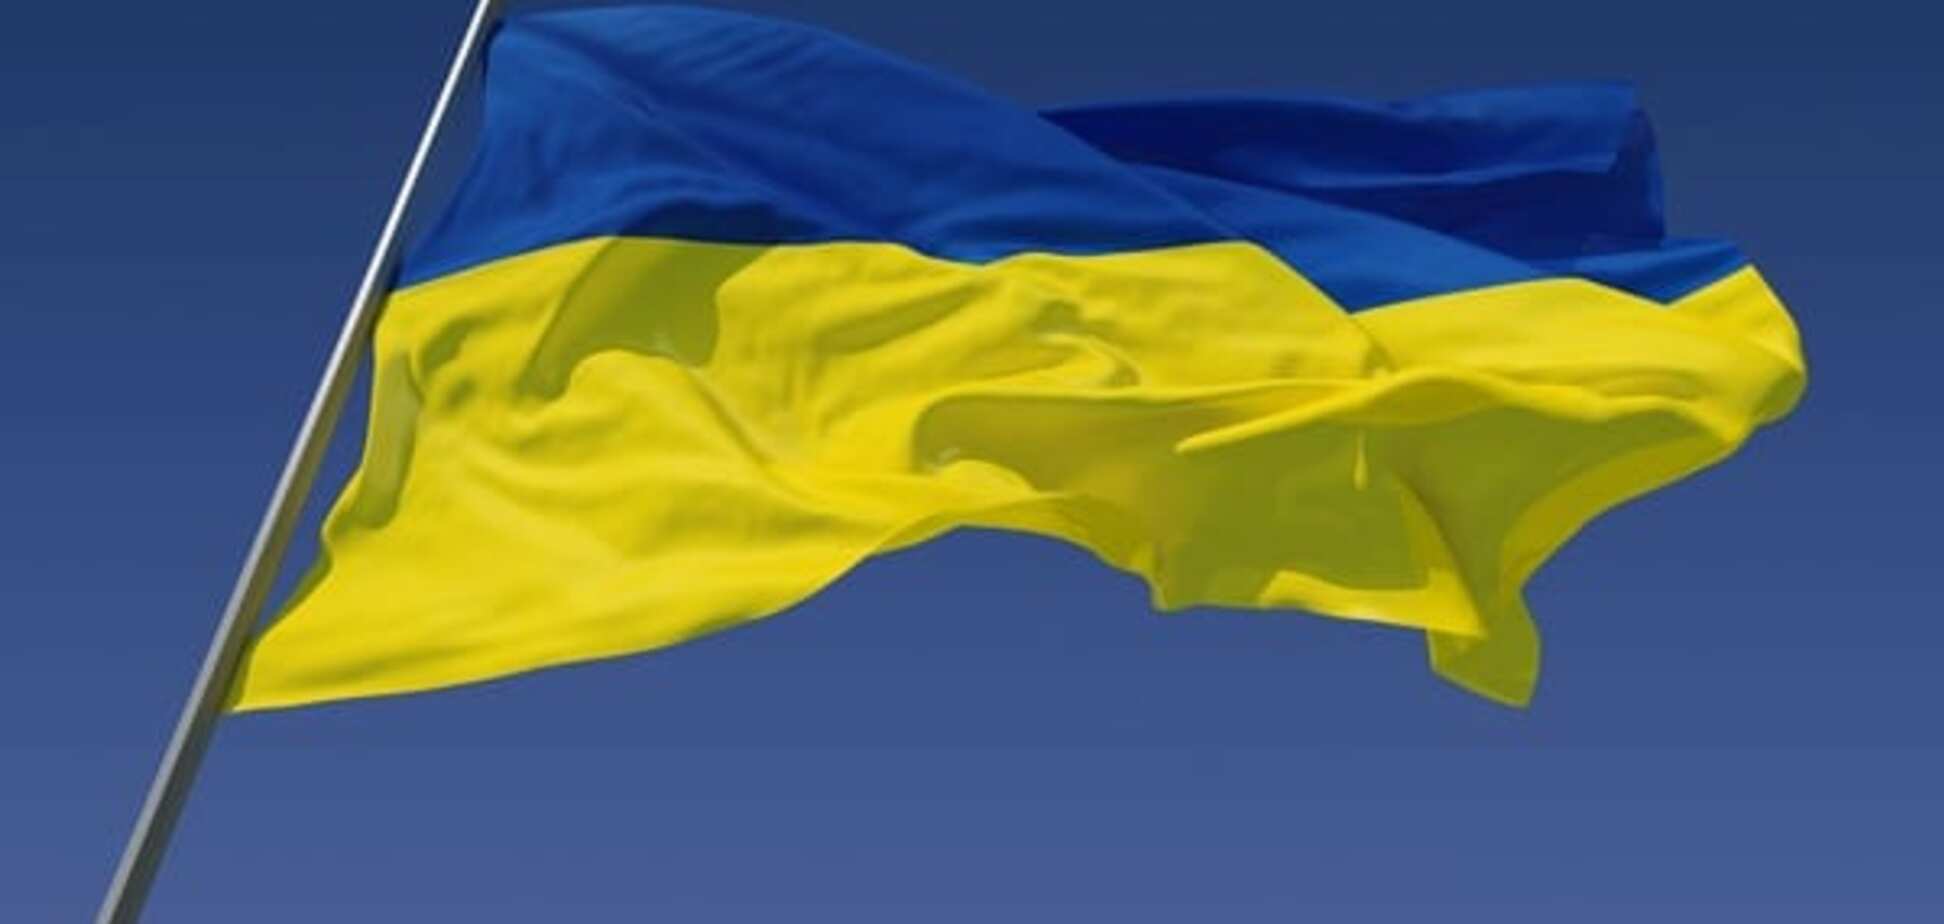 Поиск компромисса на Донбассе - это компромисс ради будущего Украины